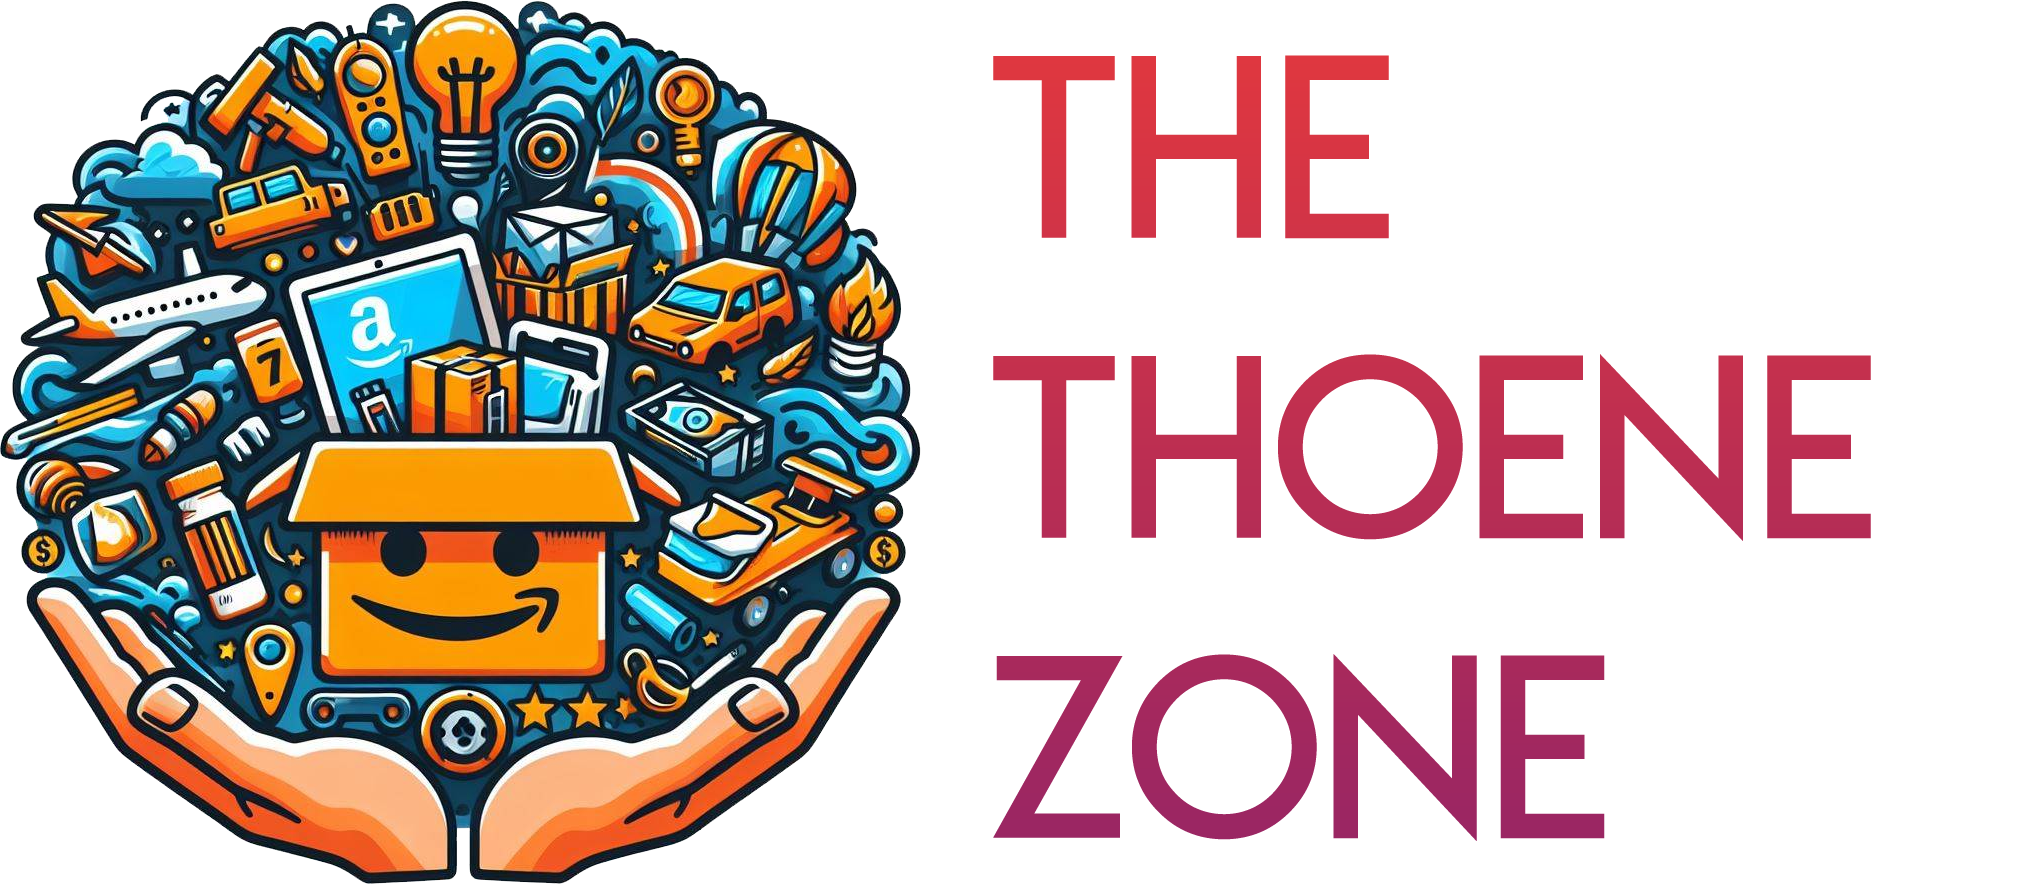 The Thoene Zone!